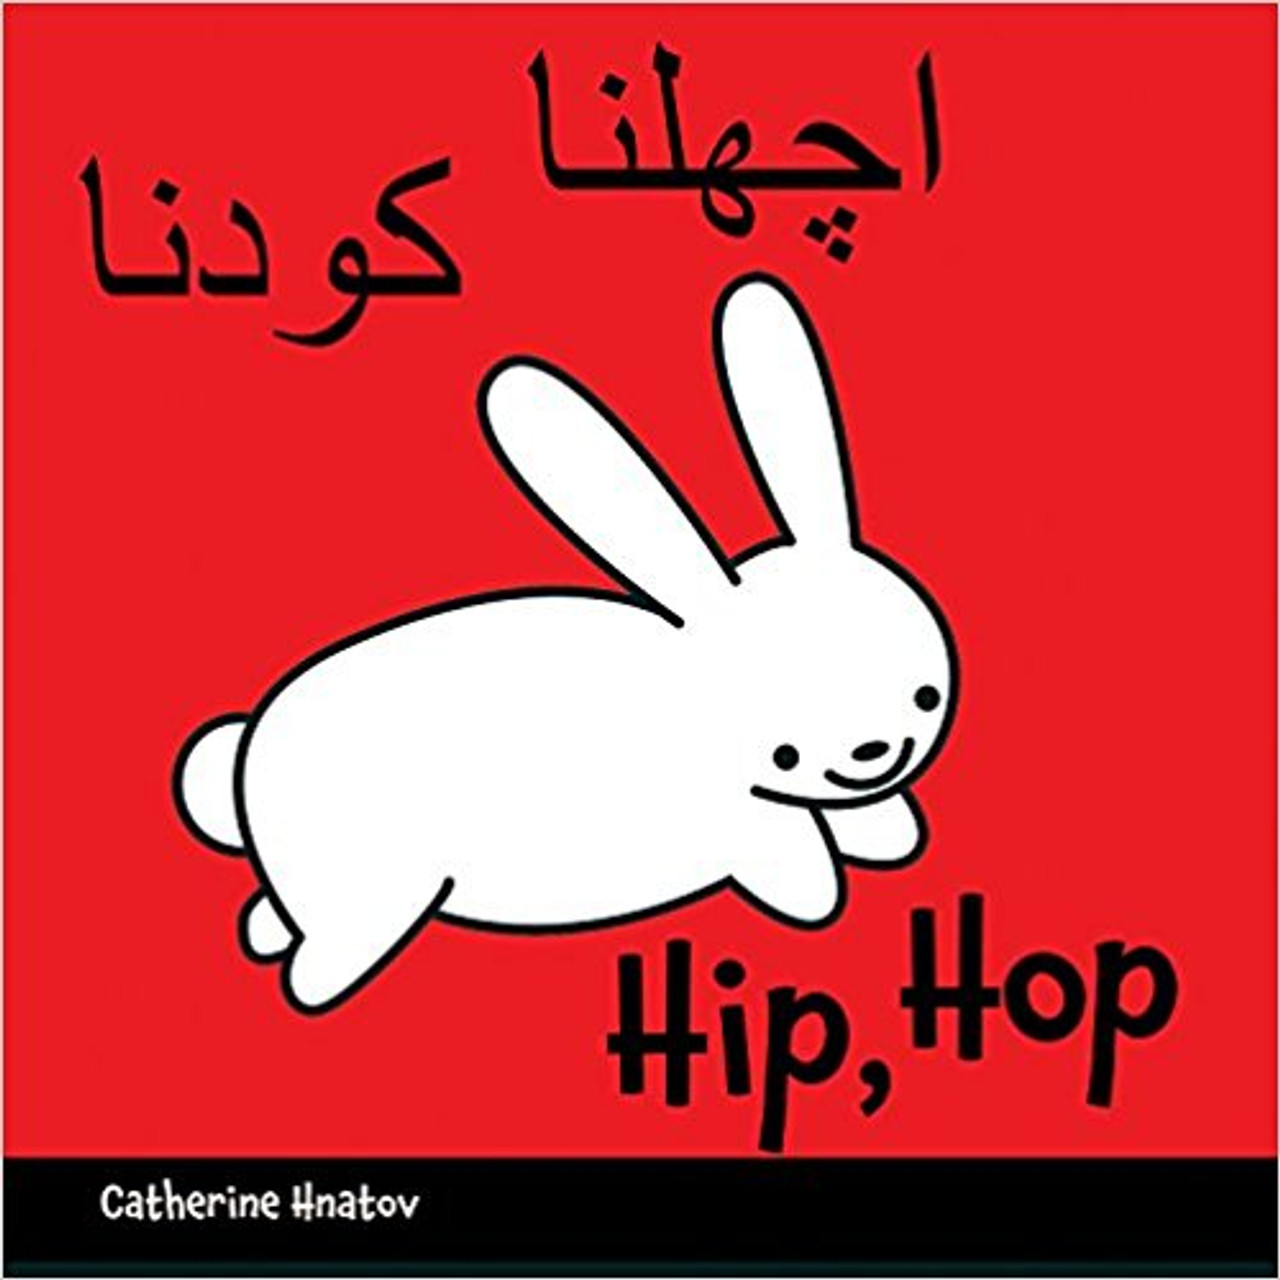 Hip, Hop (Urdu) by Catherine Hnatov